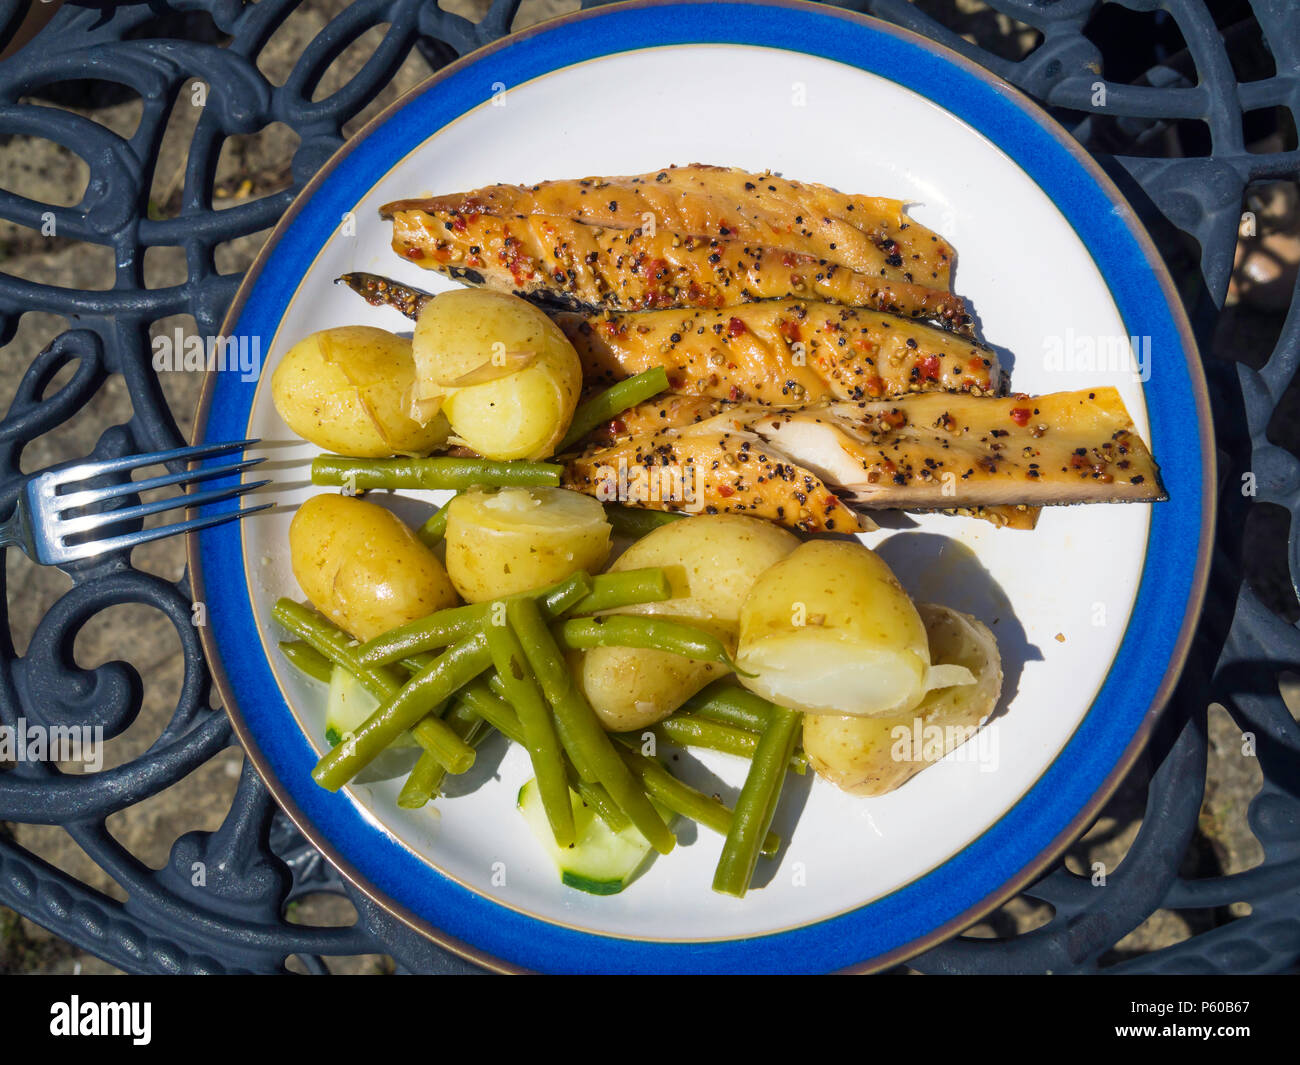 Essen Im Freien Im Sommer Mittagessen Geraucherten Makrelen Und Gespickt Mit Neuen Kartoffeln Und Grune Bohnen Stockfotografie Alamy